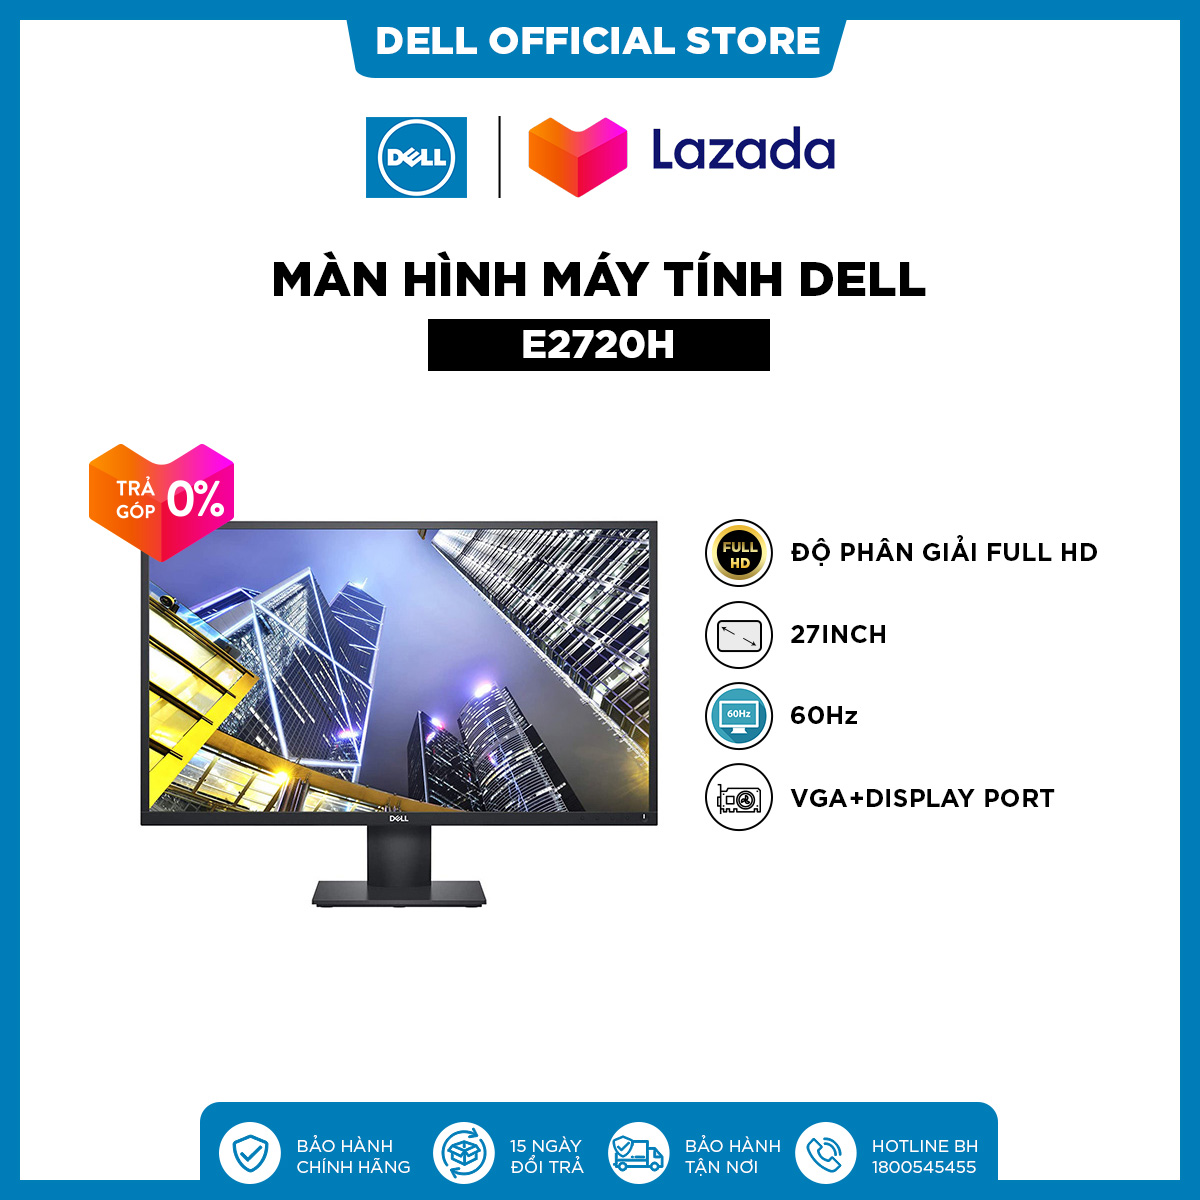 [TRẢ GÓP 0%]Màn Hình Máy Tính Dell E2720H 27inch Full HD IPS 60Hz 8msVGA+Display Port